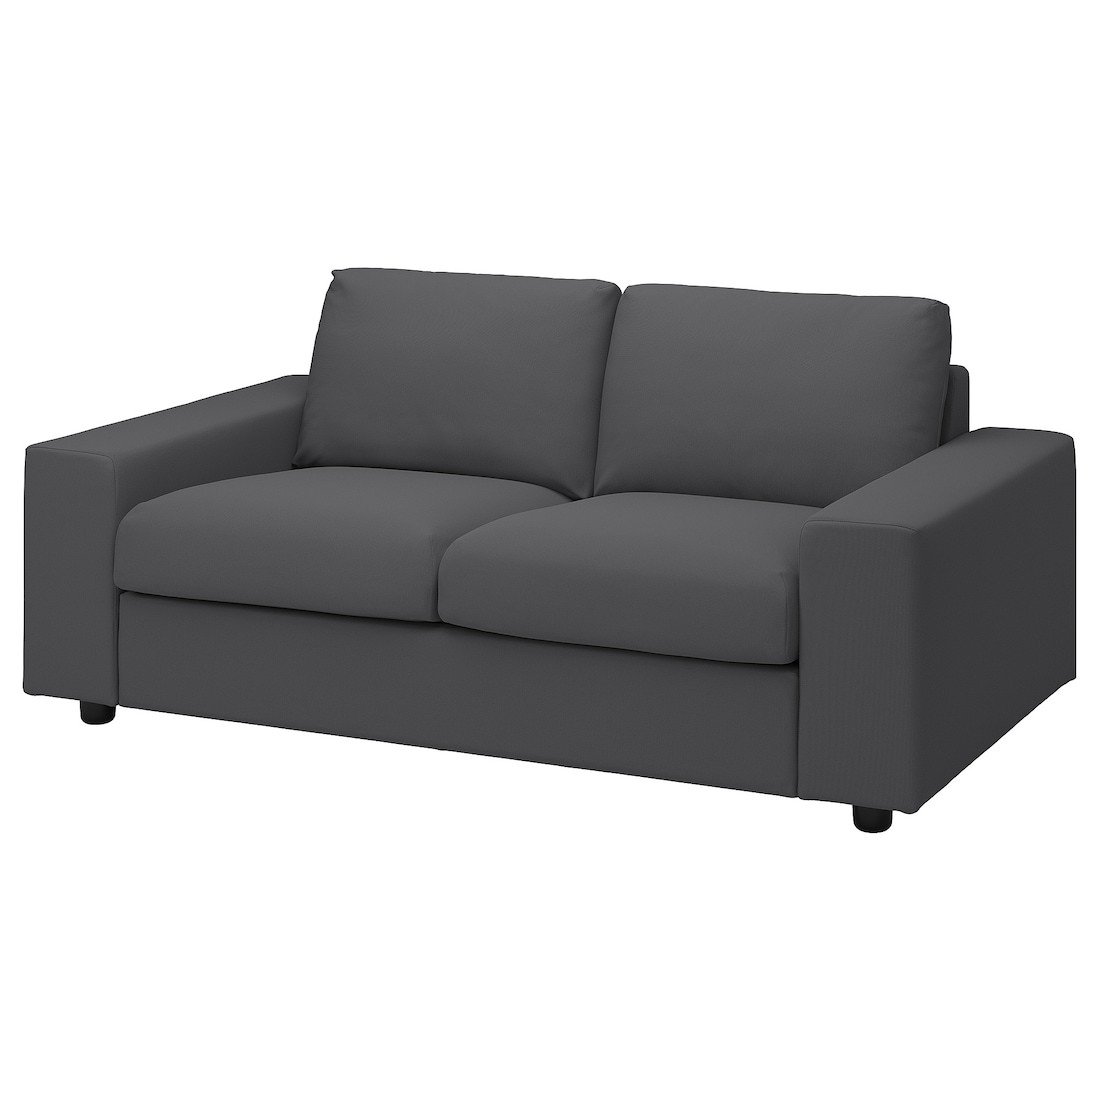 VIMLE ВИМЛЕ 2-местный диван, с широкими подлокотниками / Hallarp серый